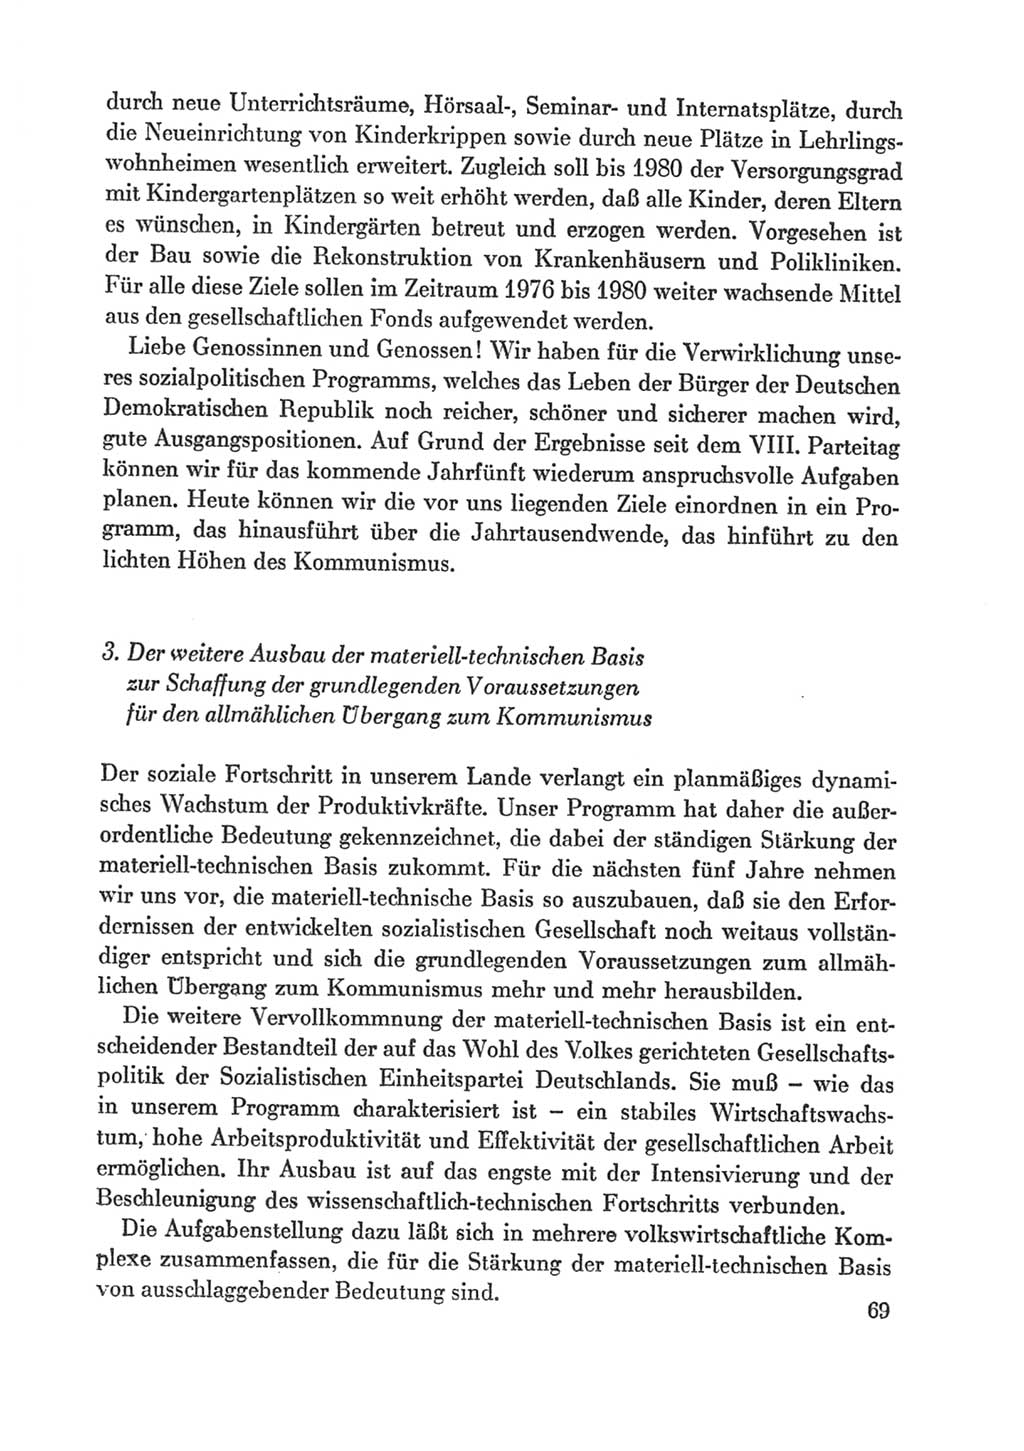 Protokoll der Verhandlungen des Ⅸ. Parteitages der Sozialistischen Einheitspartei Deutschlands (SED) [Deutsche Demokratische Republik (DDR)] 1976, Band 1, Seite 69 (Prot. Verh. Ⅸ. PT SED DDR 1976, Bd. 1, S. 69)